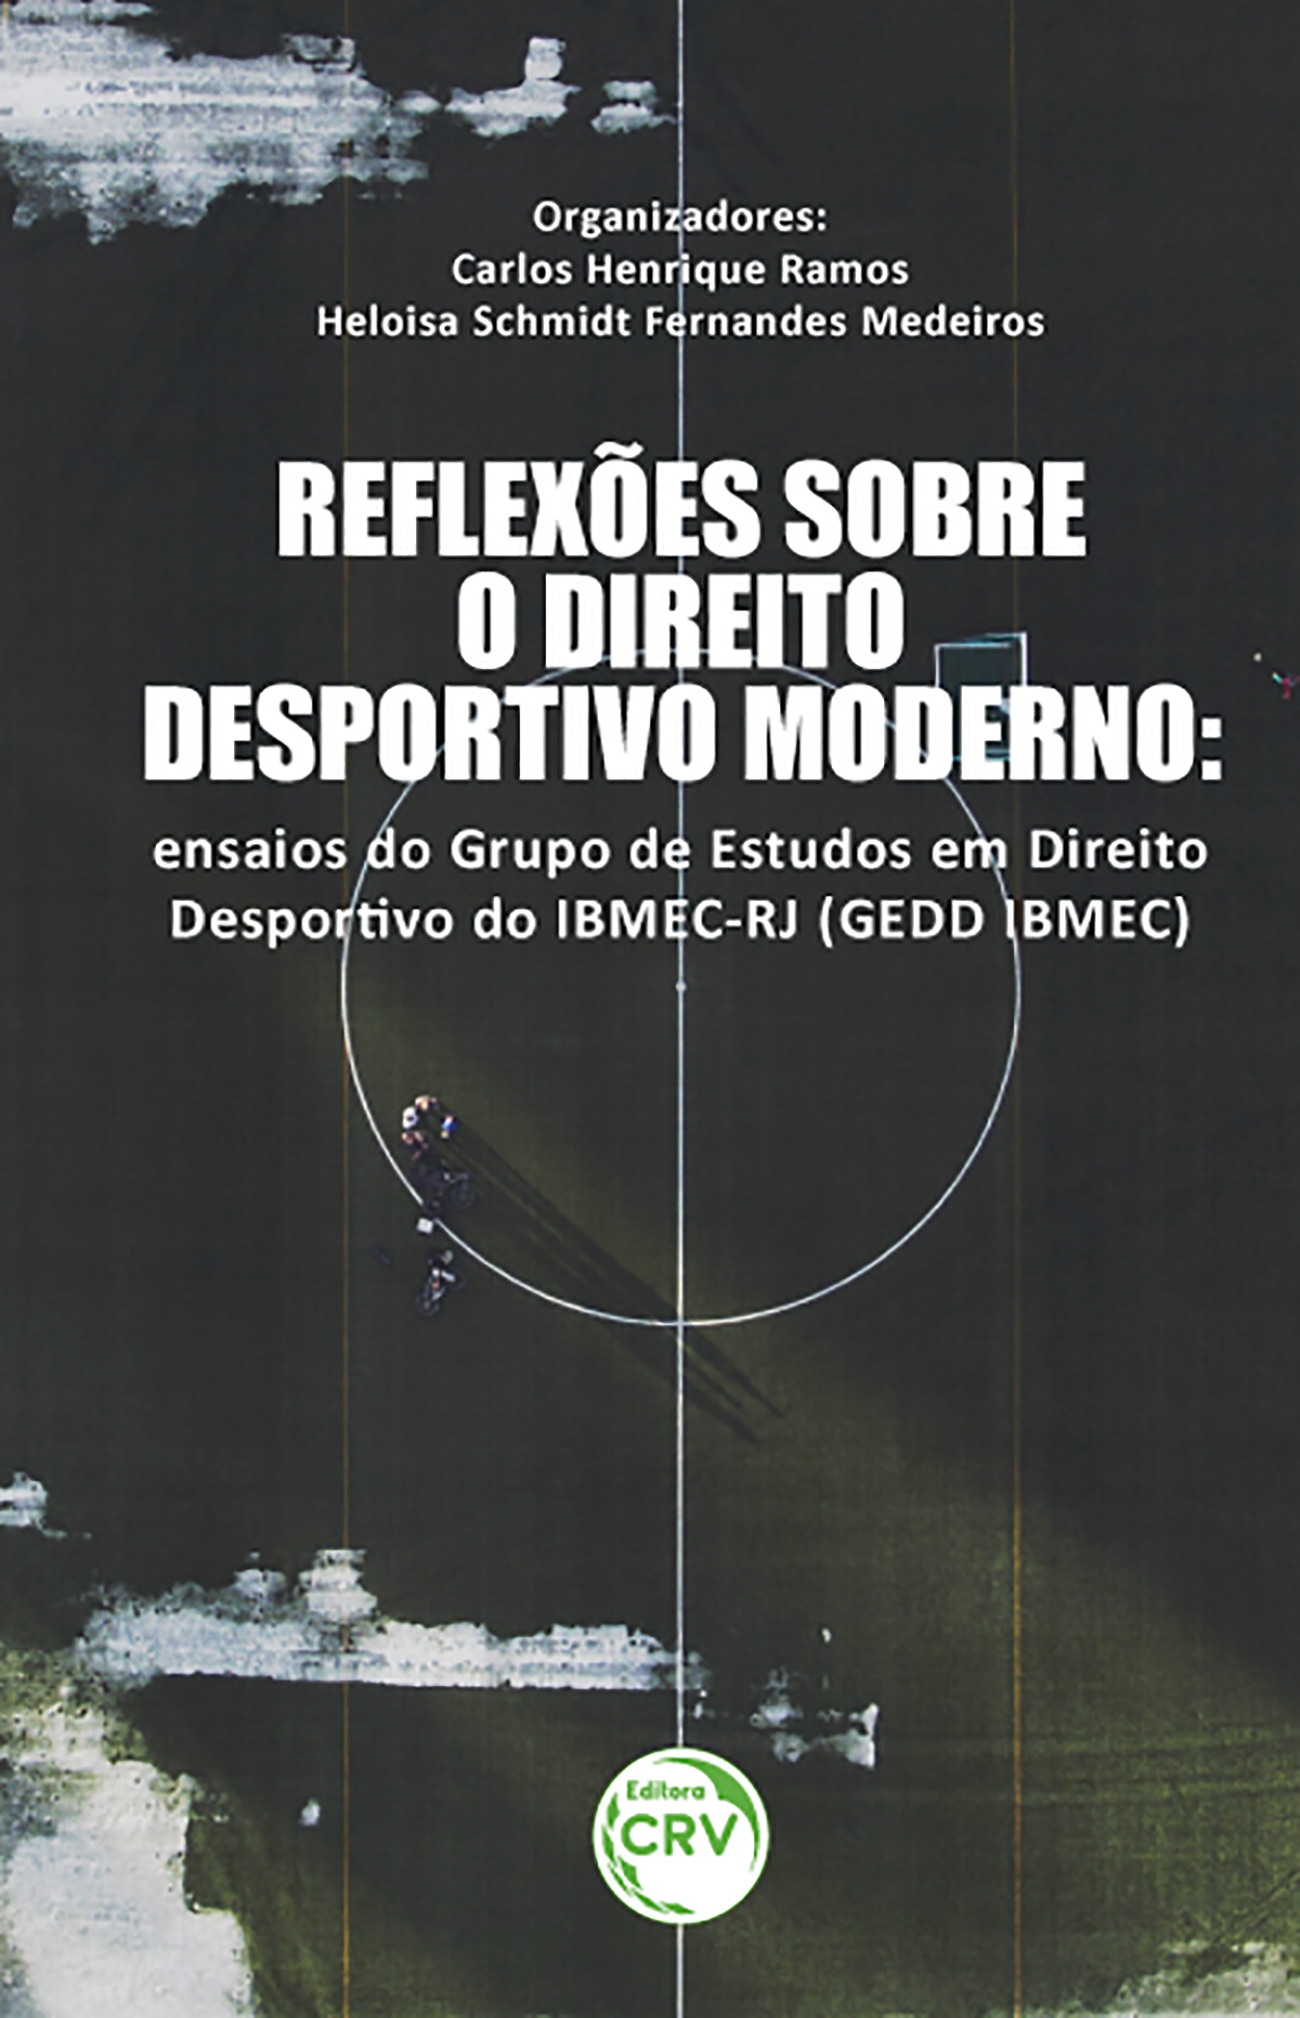 REFLEXÕES SOBRE O DIREITO DESPORTIVO MODERNO:<br> ensaios do Grupo de Estudos em Direito Desportivo do IBMEC-RJ (GEDD IBMEC)